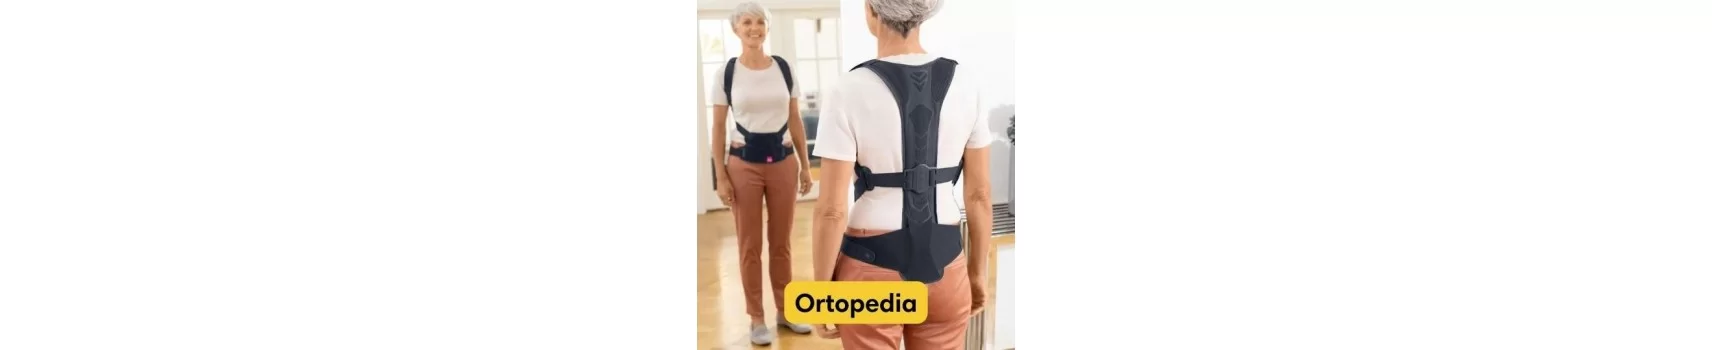 Ortopedia | Viver Melhor® | Comprar aqui